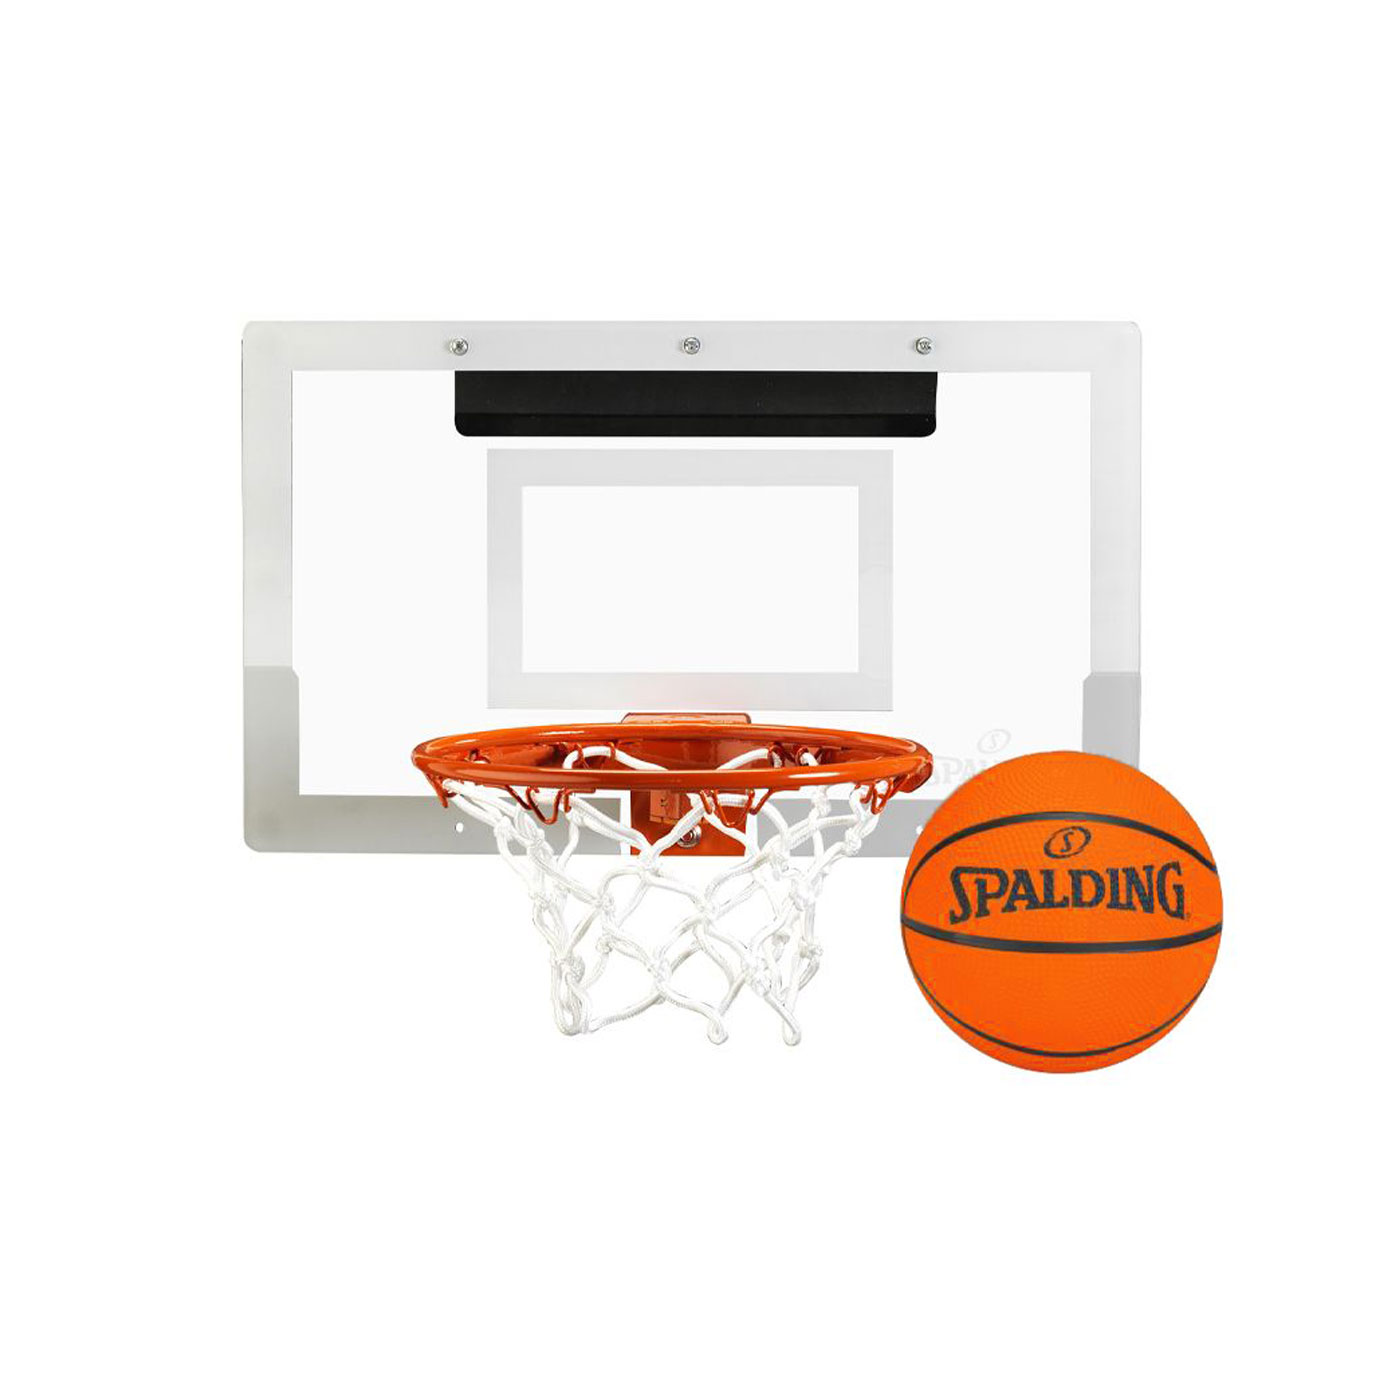 SPALDING 室內小籃板(含小球) SPB561030